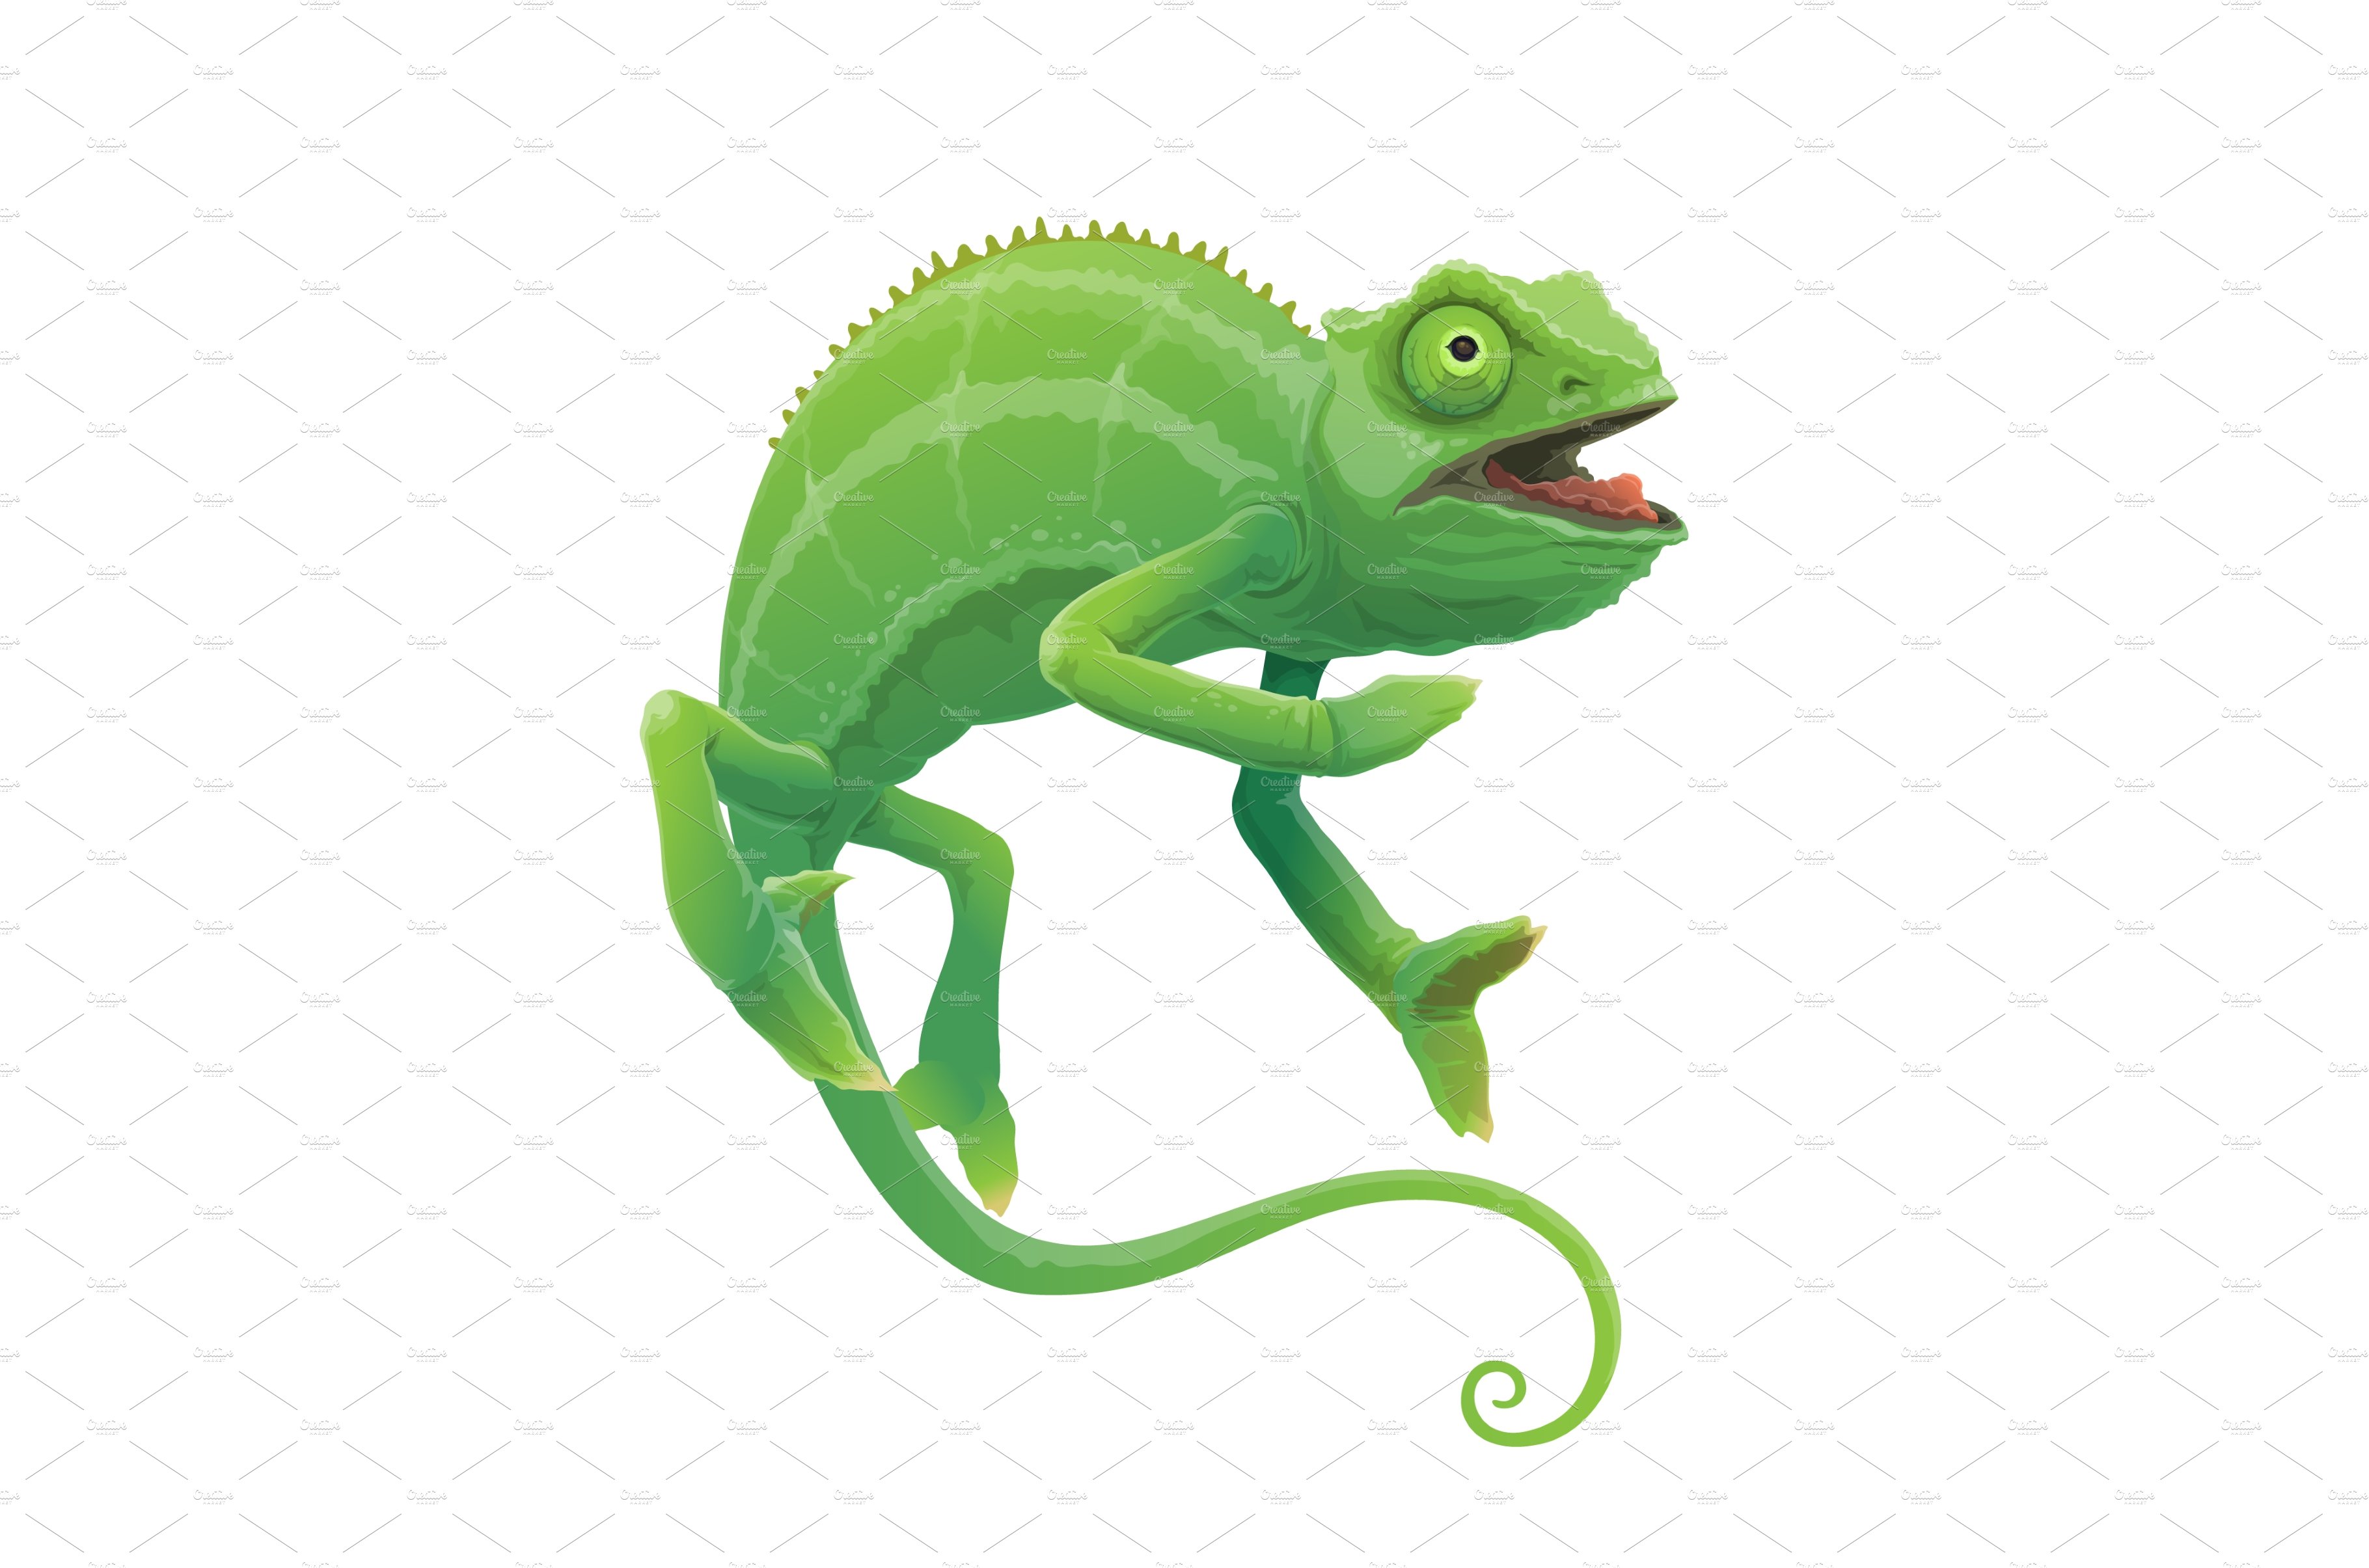 Chameleon vector green lizard cover image.